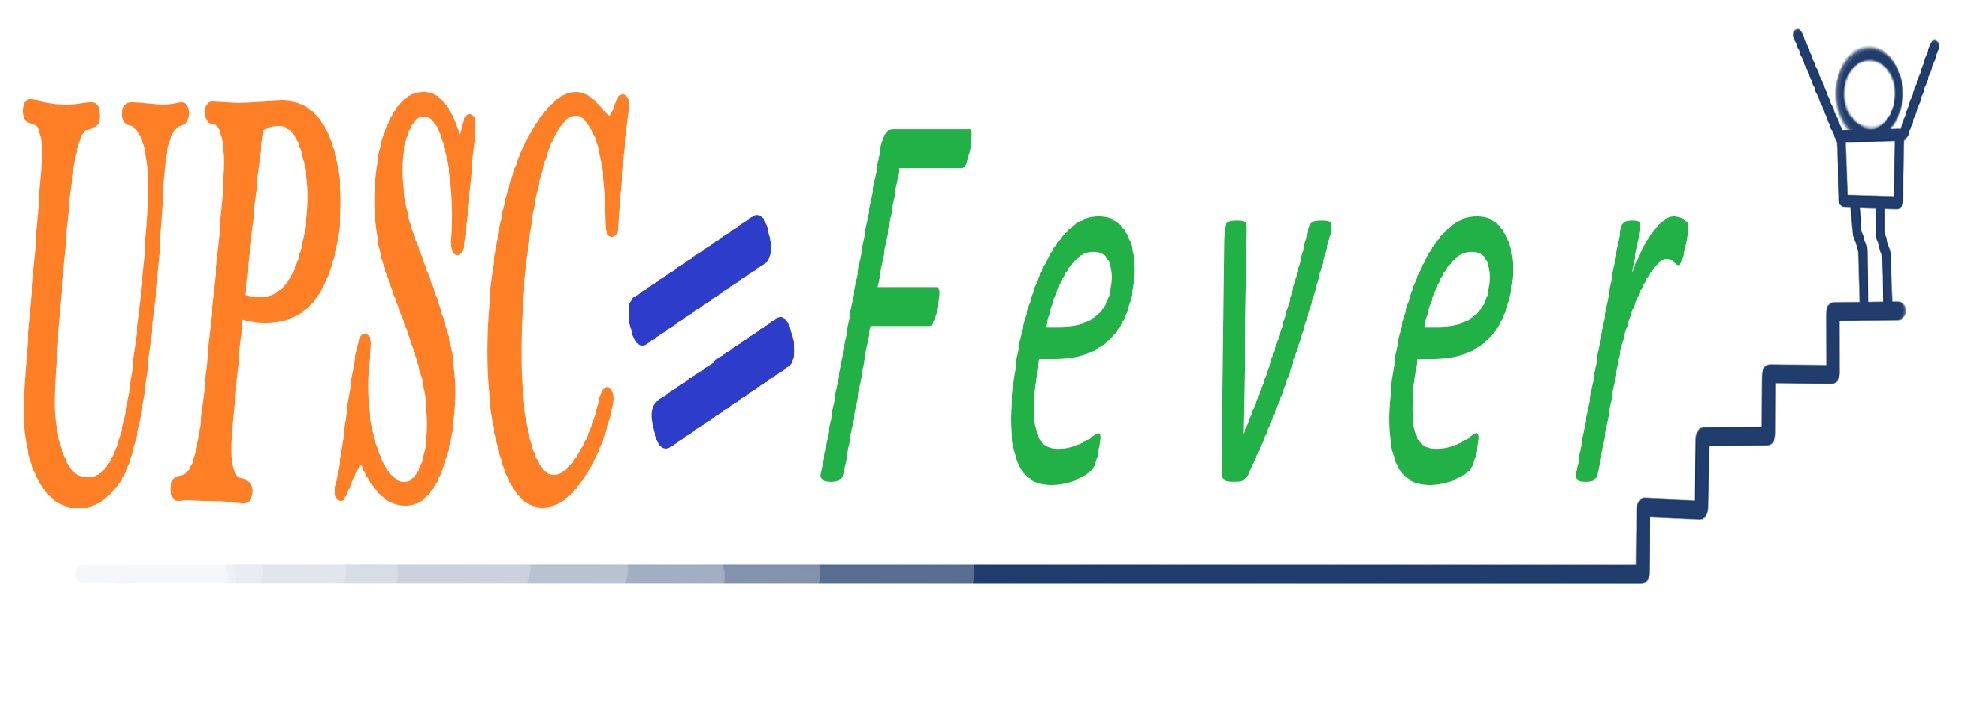 upscfever Logo